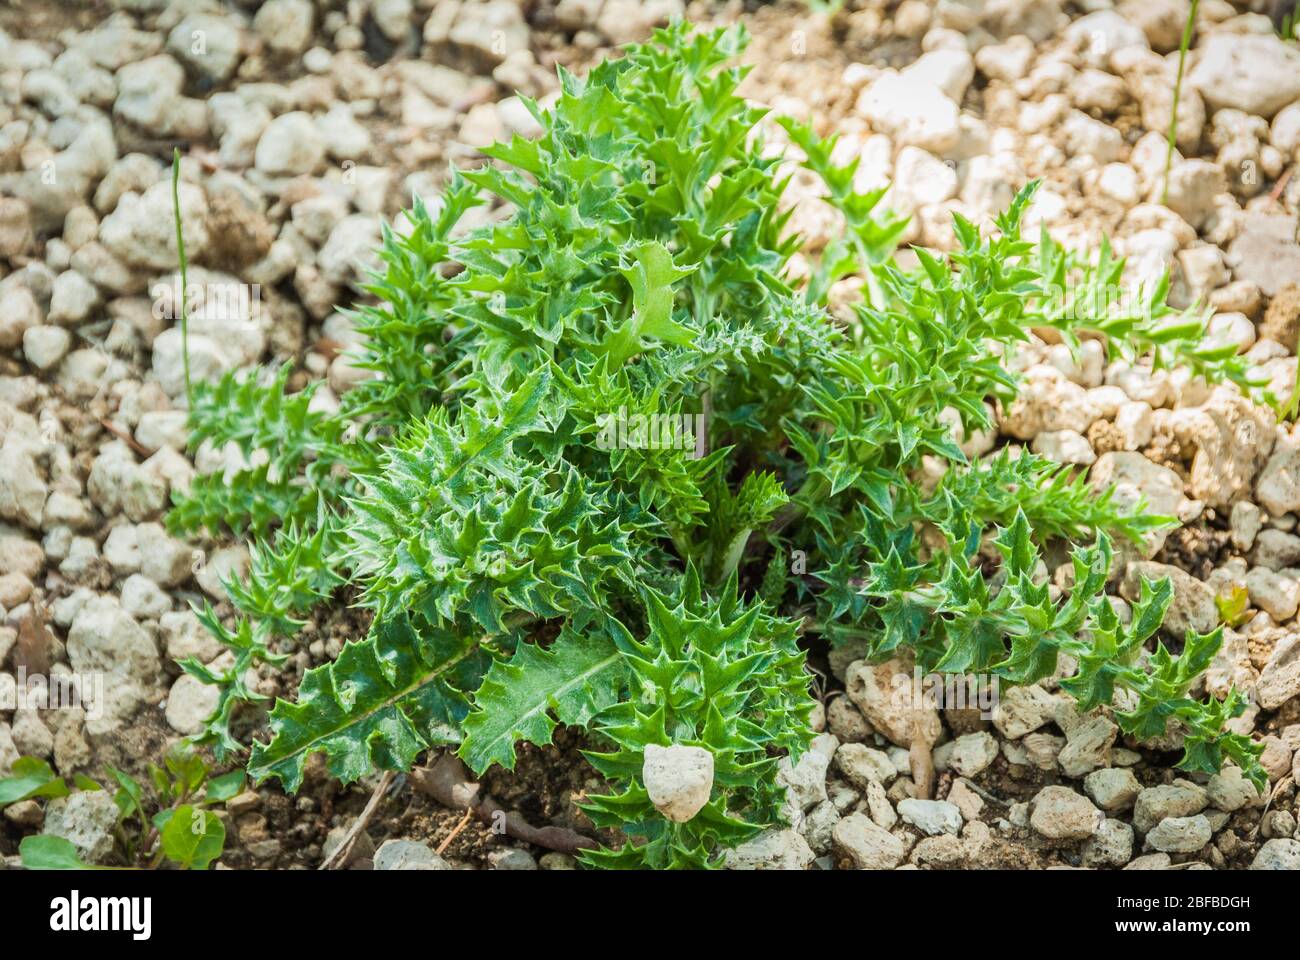 Carlina acaulis plant at field at nature. Carlina vulgaris or Carline grass, family Asteraceae Stock Photo